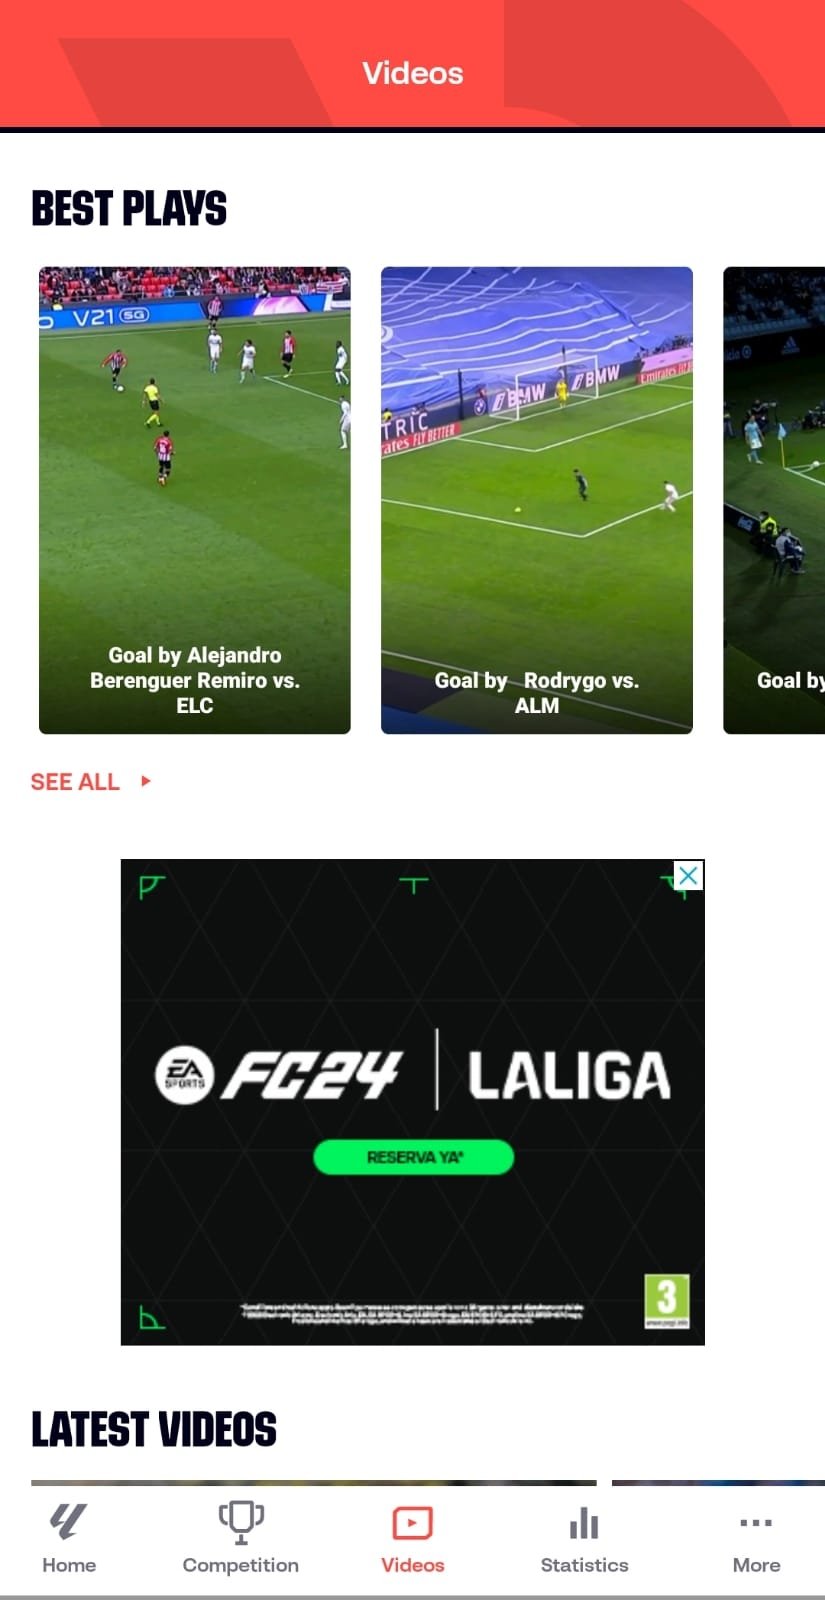 La Liga Juego De Football - Apps on Google Play